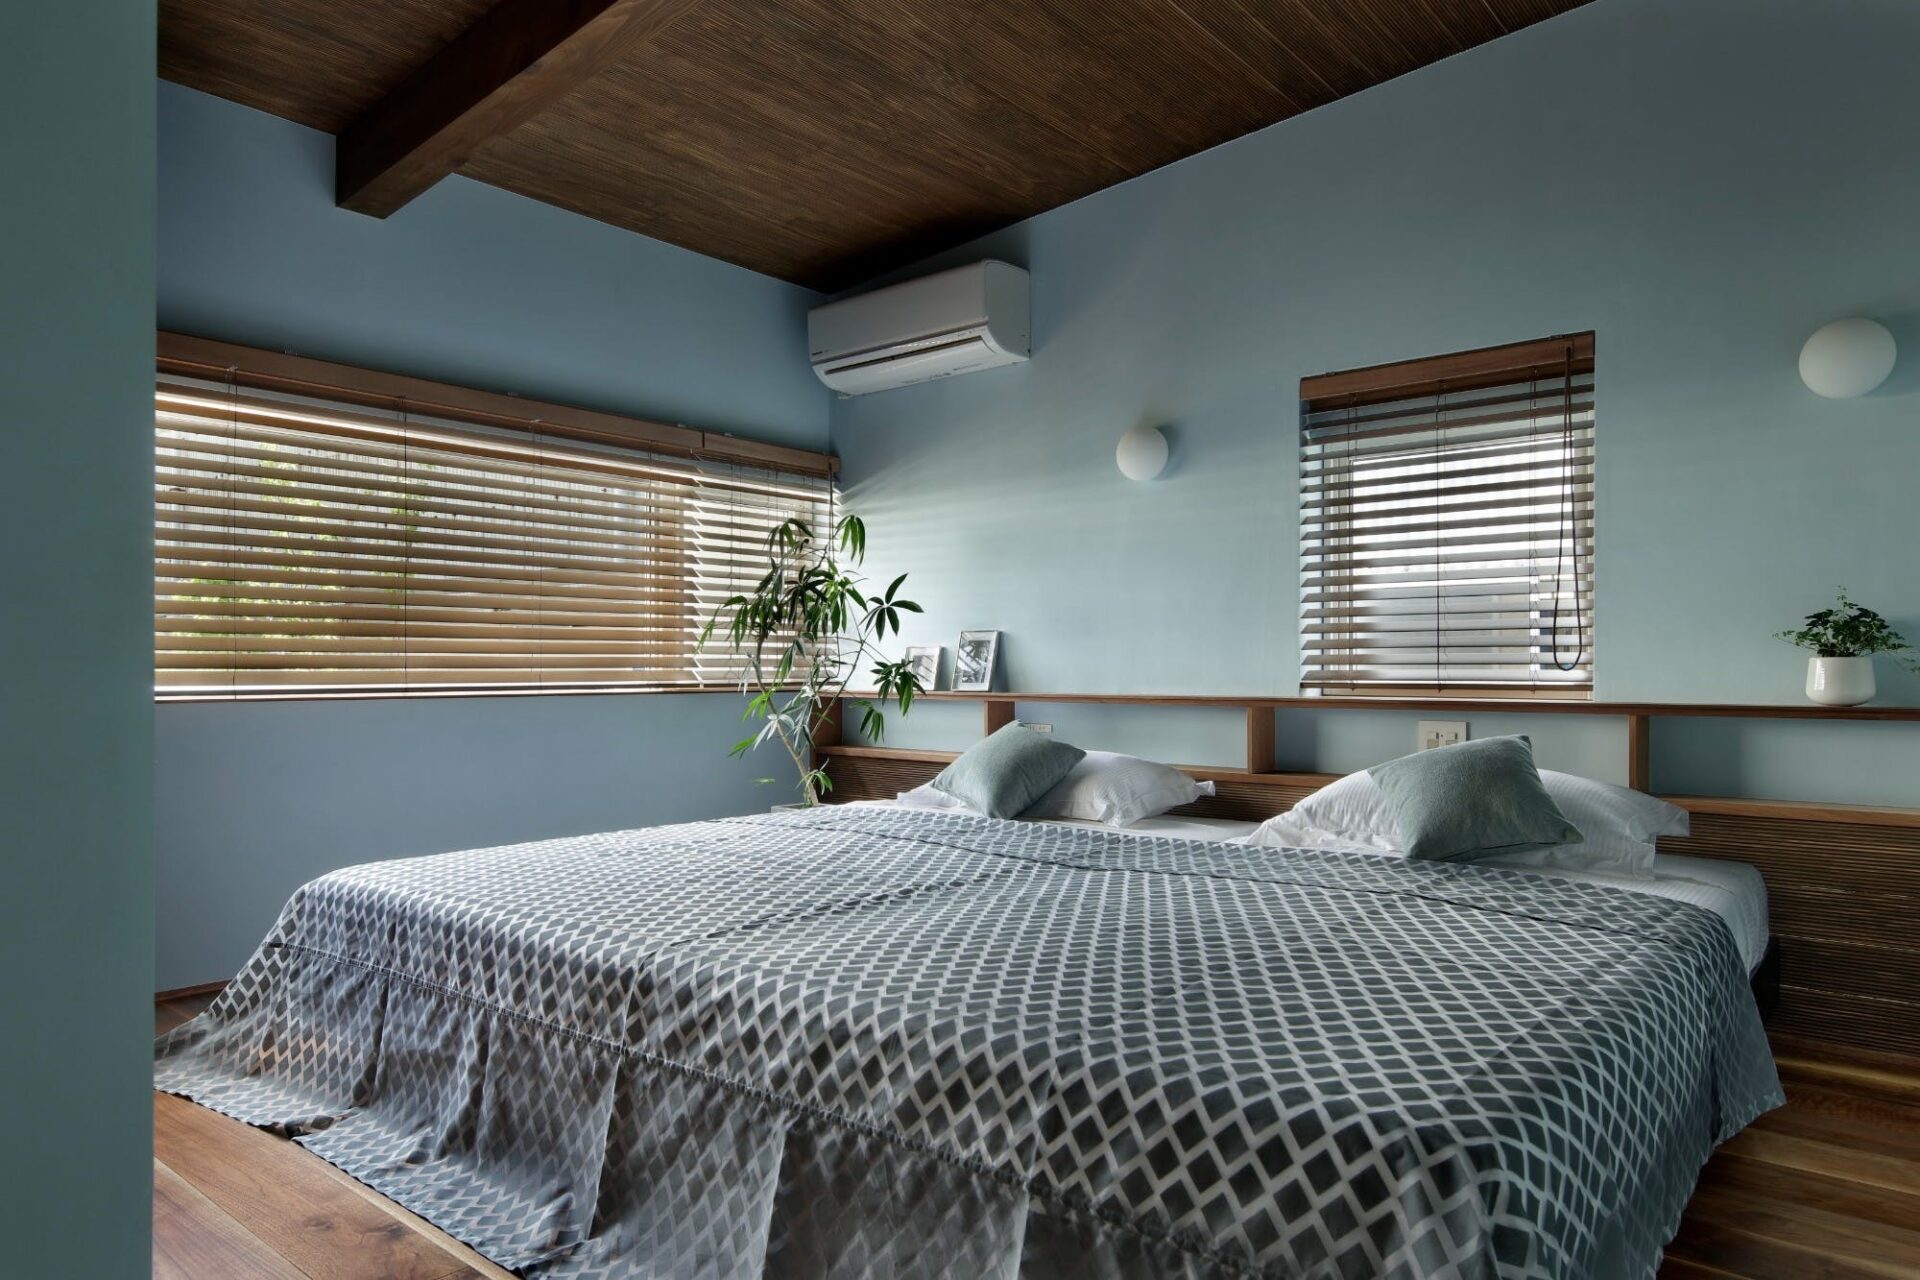 新築住宅で「快適な寝室」を作るための条件とは？ 6つのポイントから解説